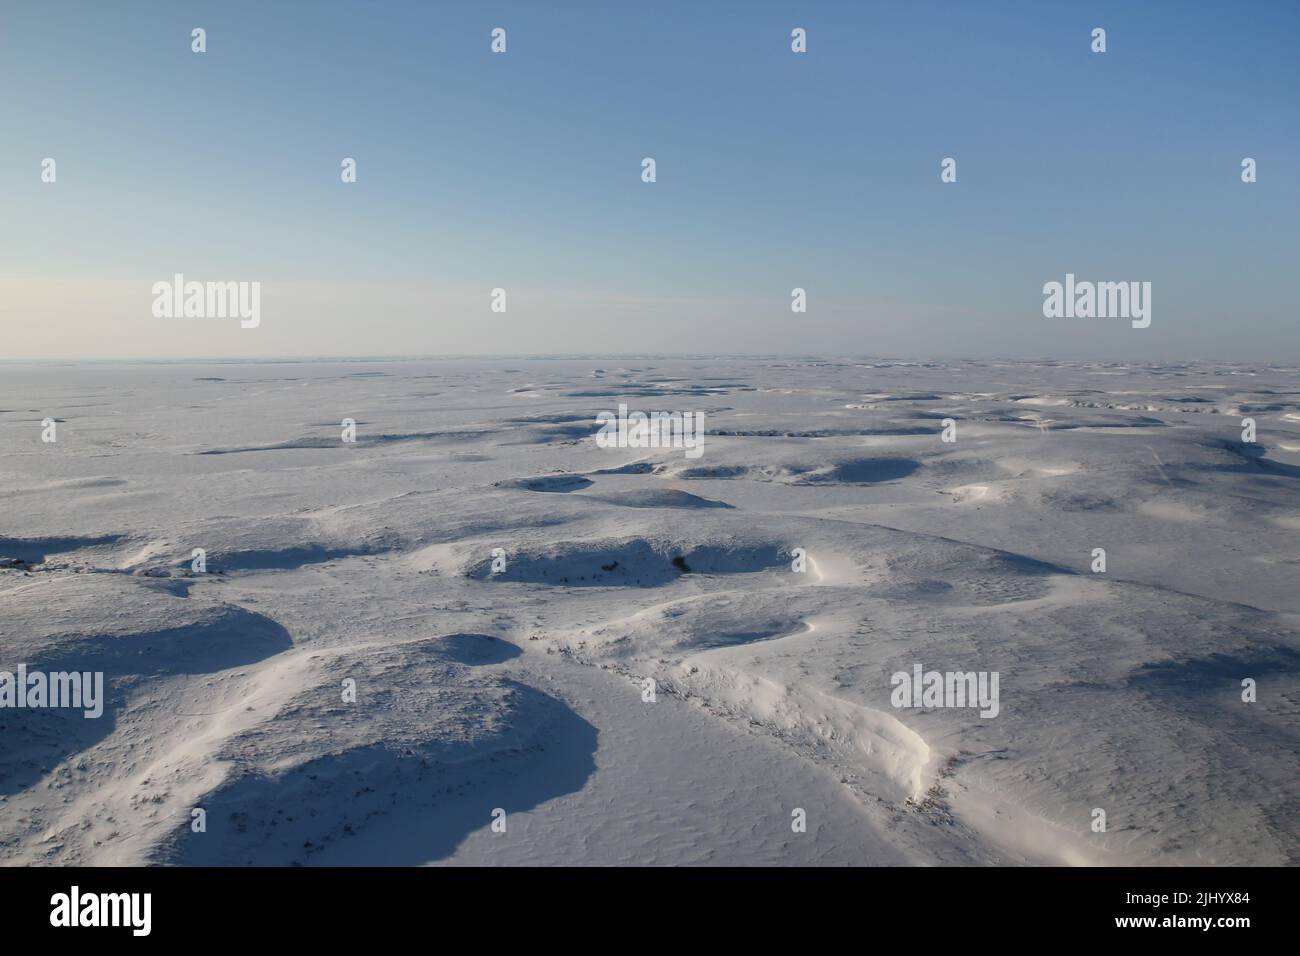 Vue aérienne de la toundra arctique gelée recouverte de neige, à l'extérieur de Tuktoyaktuk, Territoires du Nord-Ouest, Ouest de l'Arctique, Canada. Banque D'Images